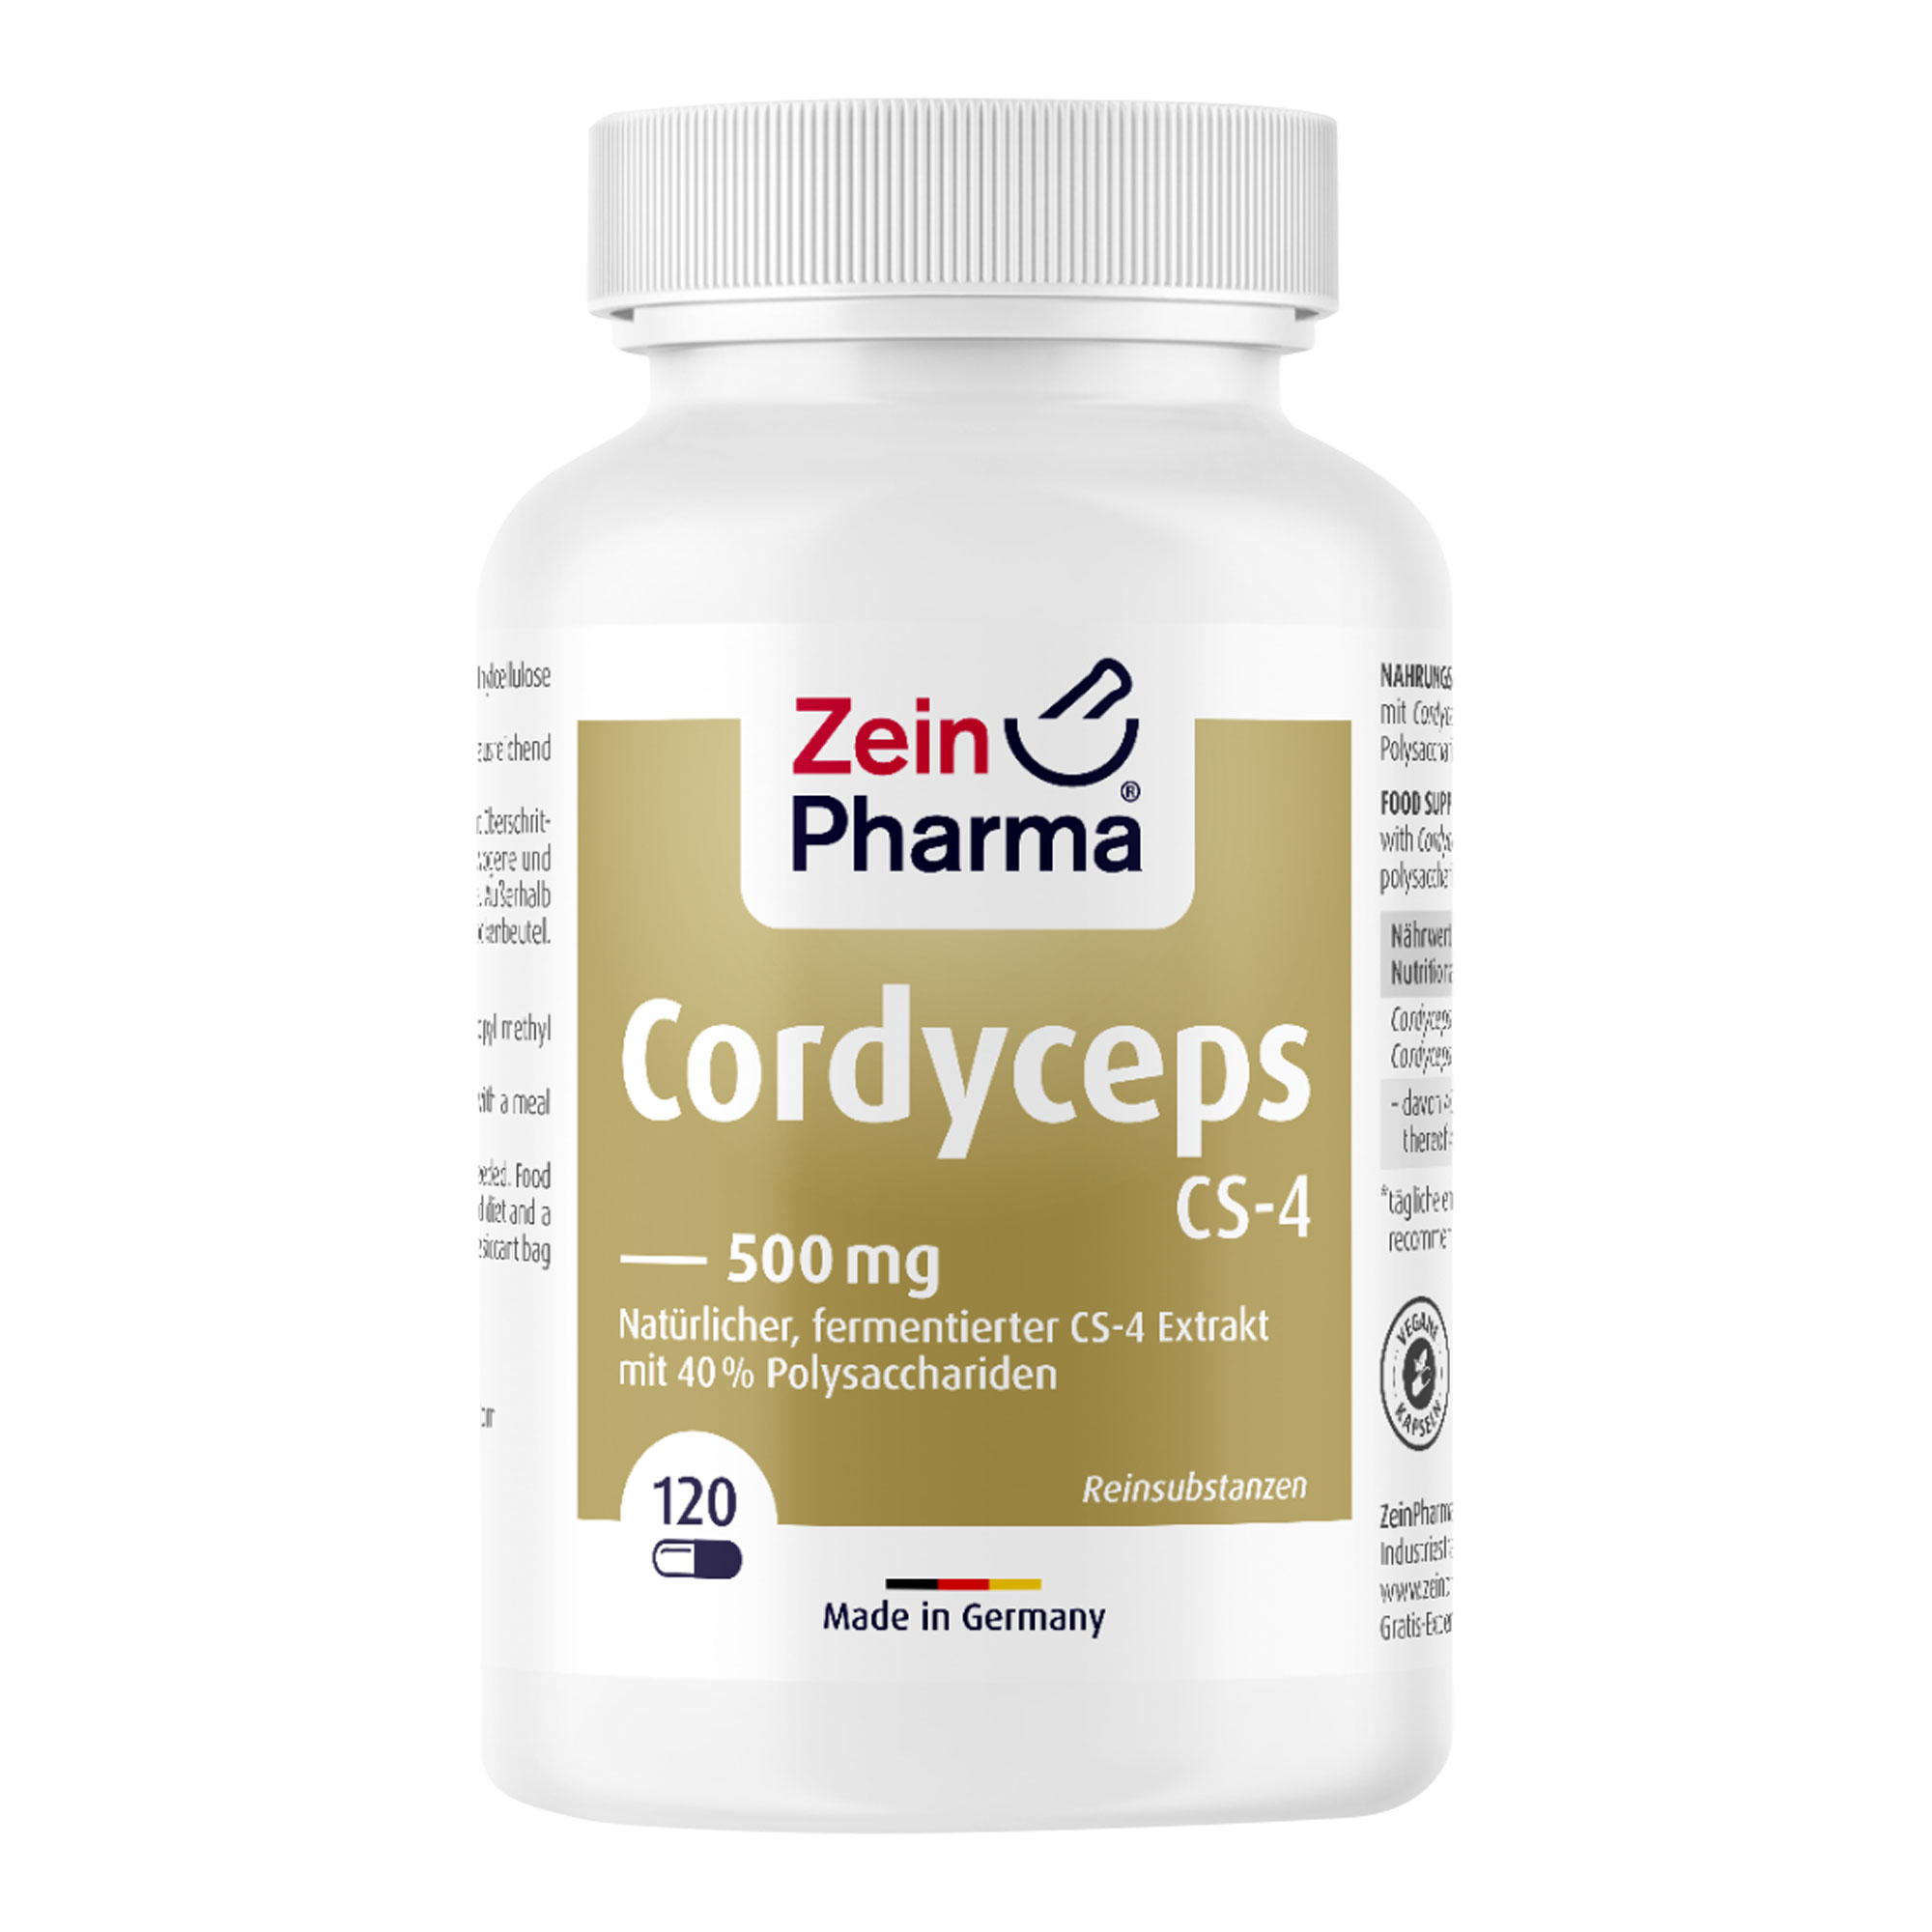 Nahrungsergänzungsmittel mit Cordyceps sinensis CS-4-Extrakt (mit mindestens 40 % Polysacchariden) in veganen Kapseln.